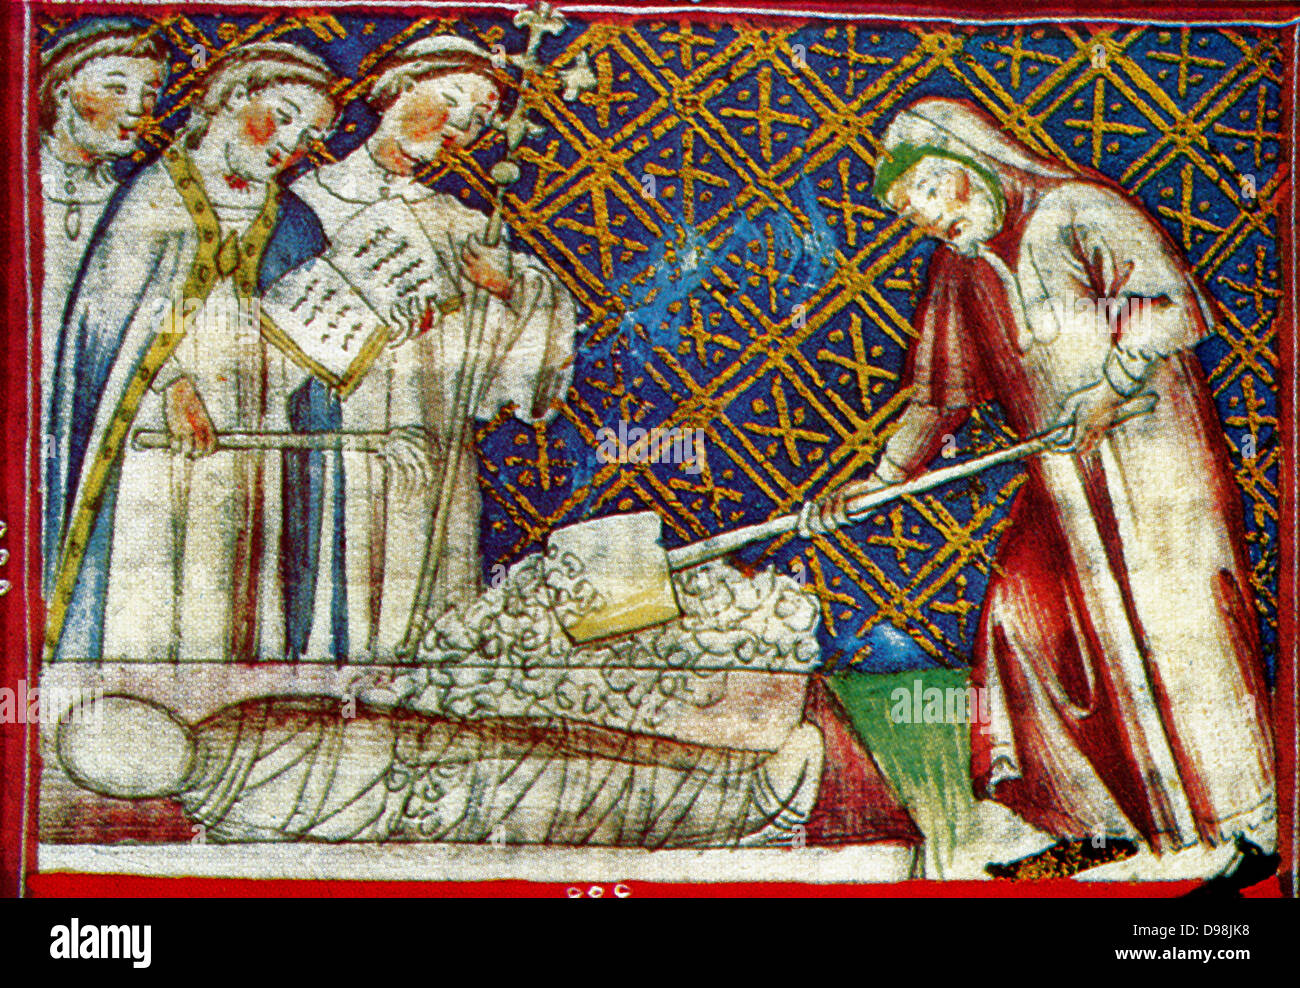 Escena desde el siglo XIV, manuscrito ilustrado del Breviari d'amor. Ilustra los siete actos de misericordia. Aquí se muestra enterrando a los muertos Foto de stock